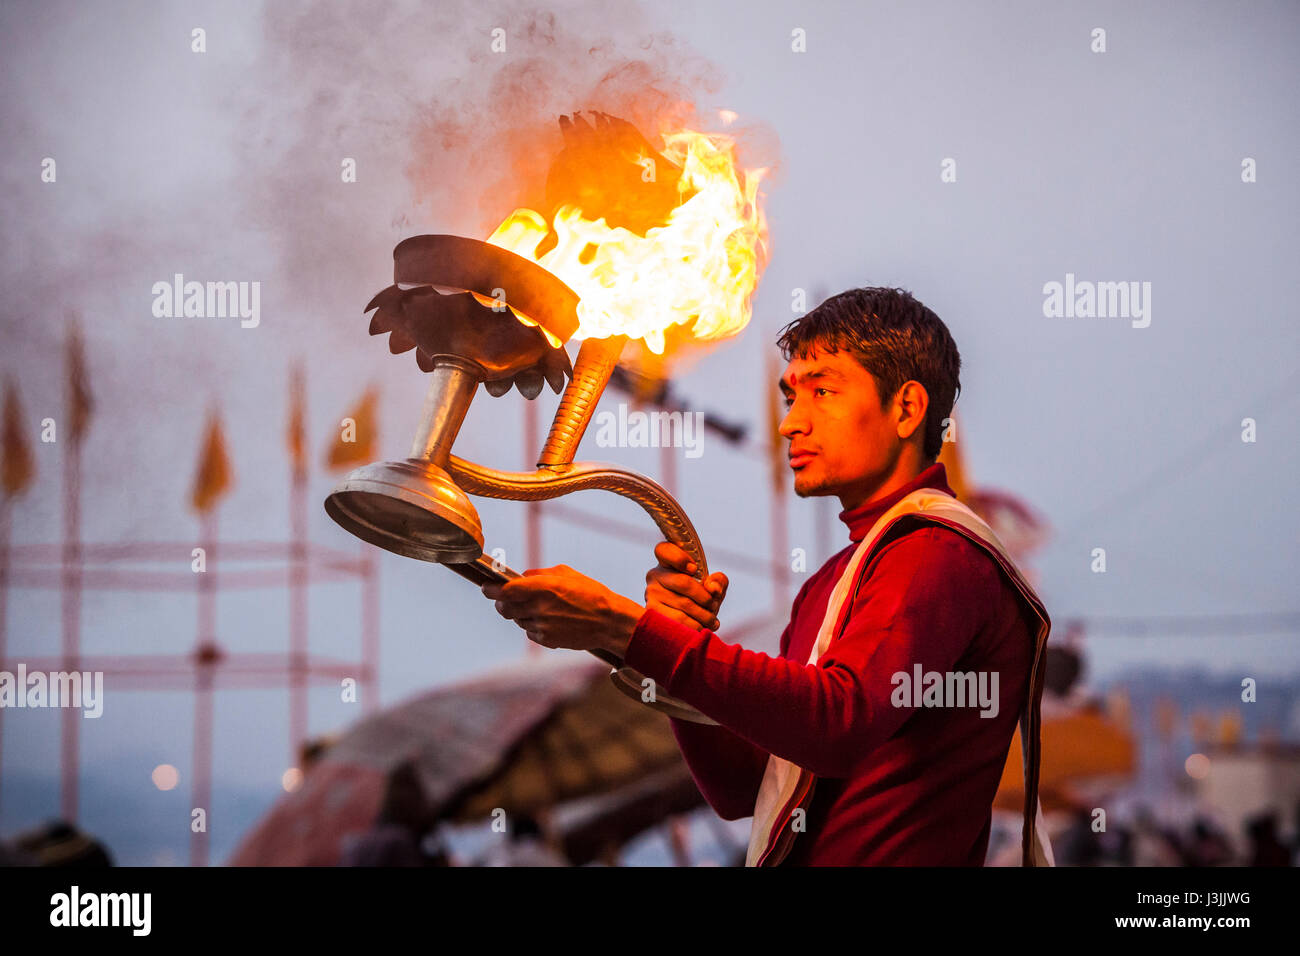 Un sacerdote Indù sulle rive del Gange / Ganga river di Varanasi, India esegue una cerimonia (puja) con una lampada ad olio. Foto Stock